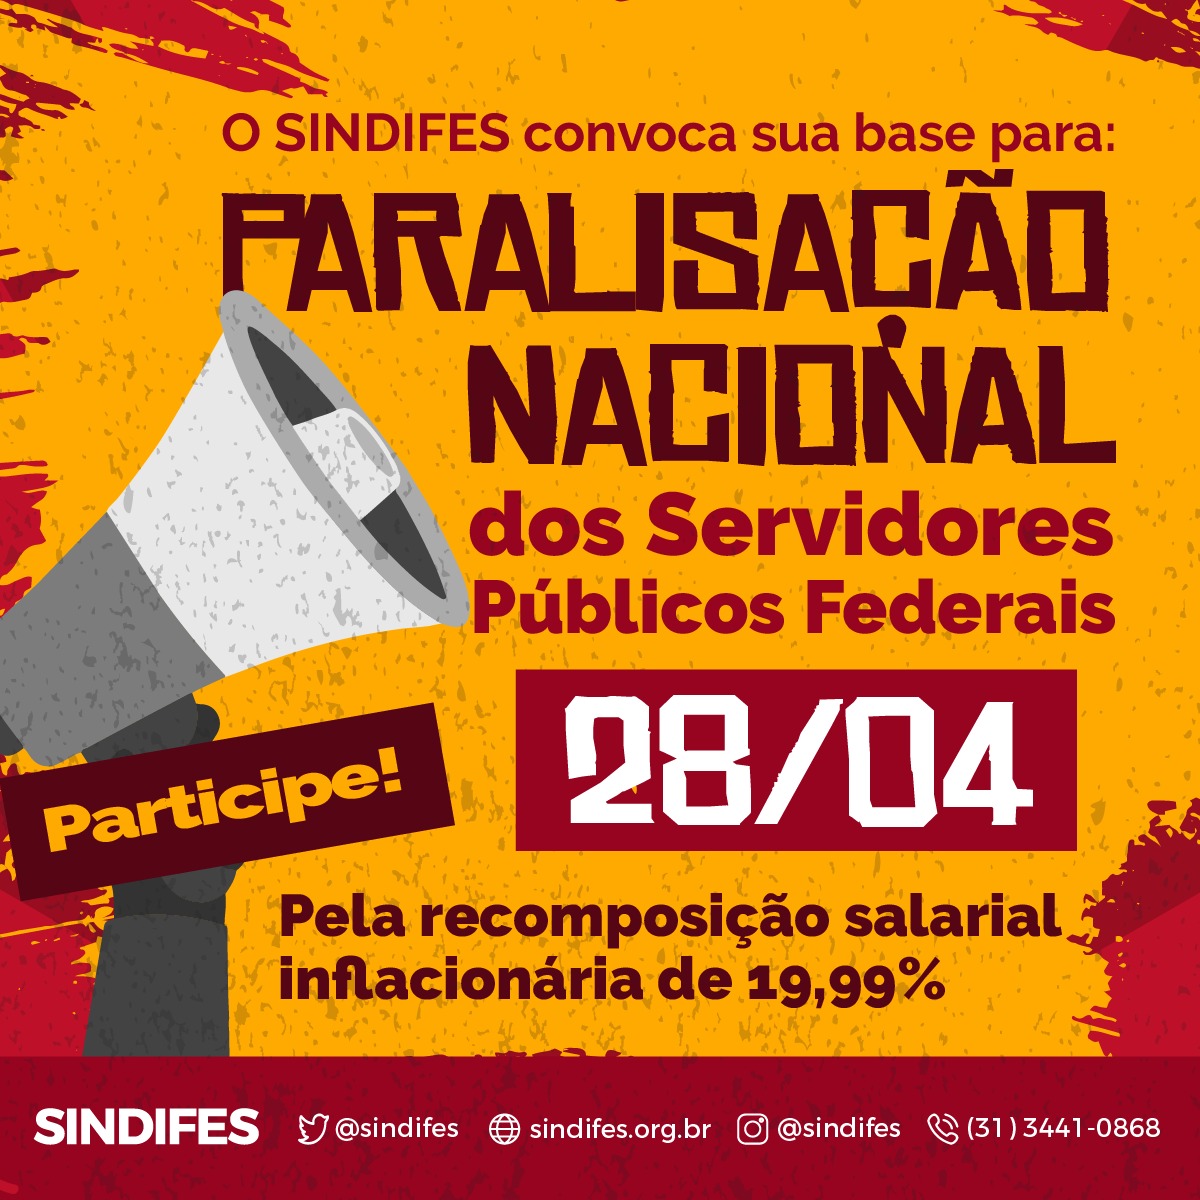 Servidores Públicos Federais fazem Paralisação Nacional pela Recomposição Salarial Inflacionária nesta quinta, 28 de abril 3